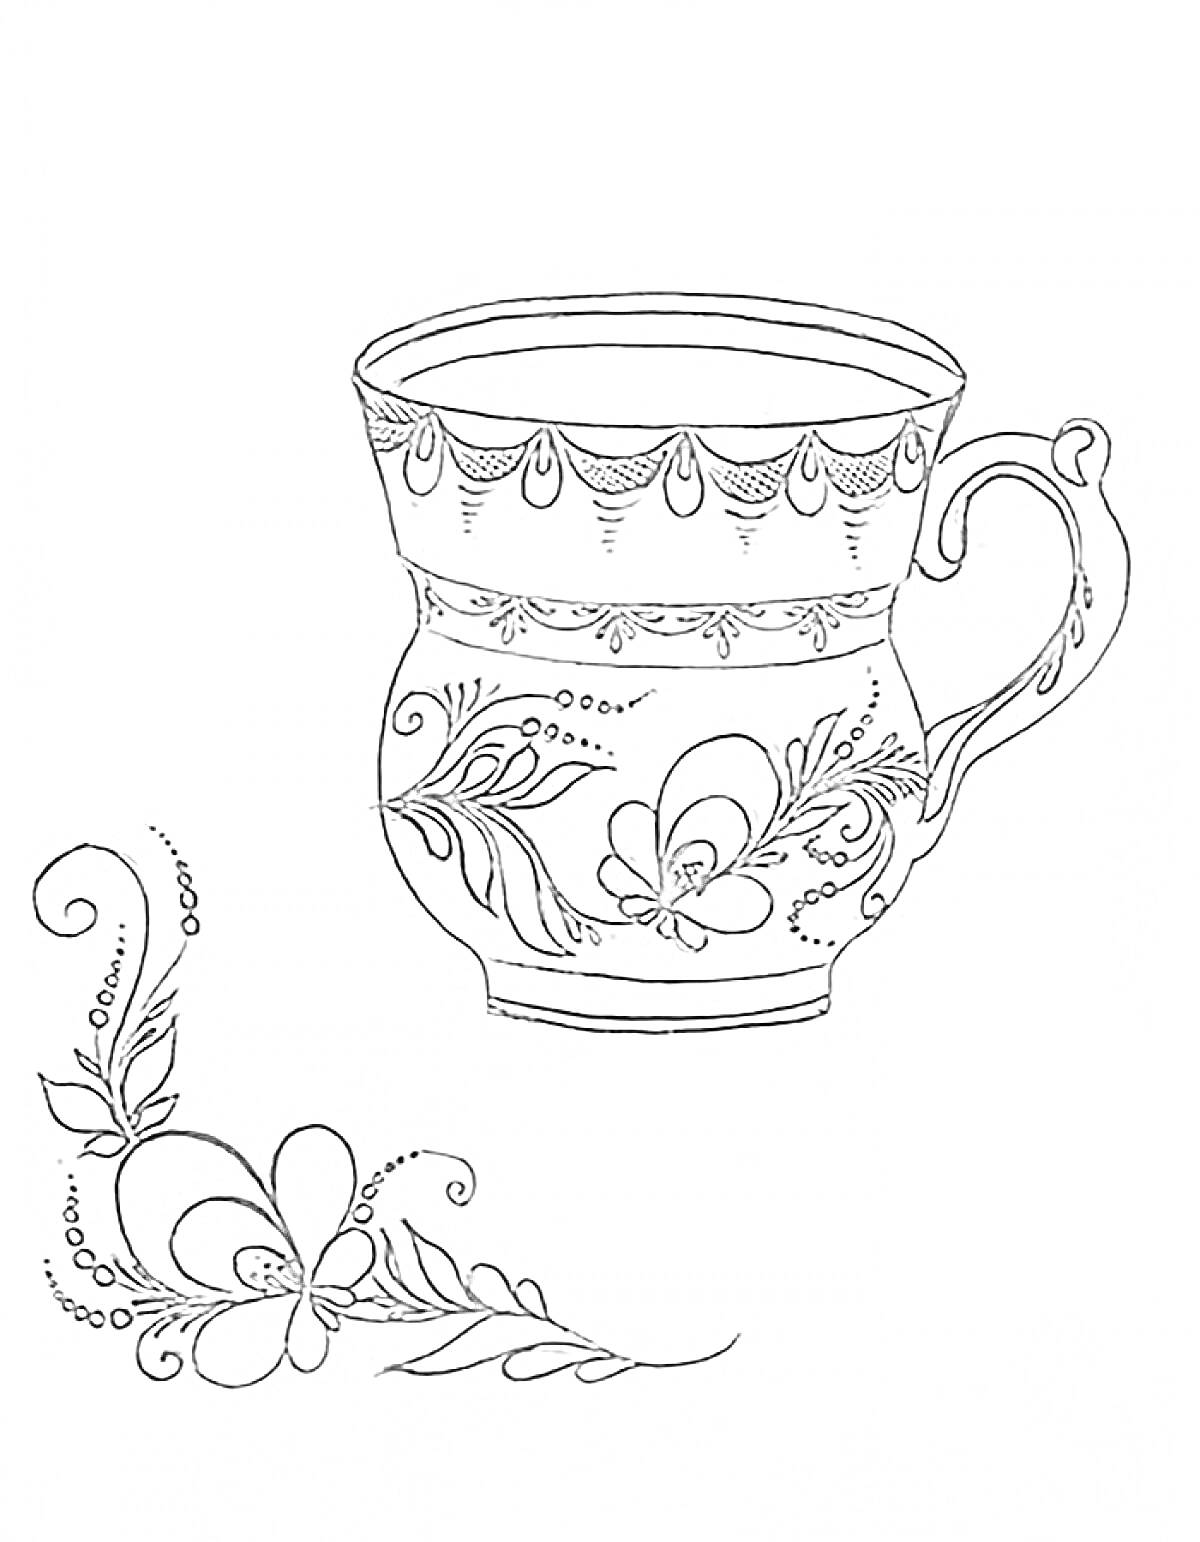 Раскраска Чашка с цветочным орнаментом в стиле Гжель и элементами узора